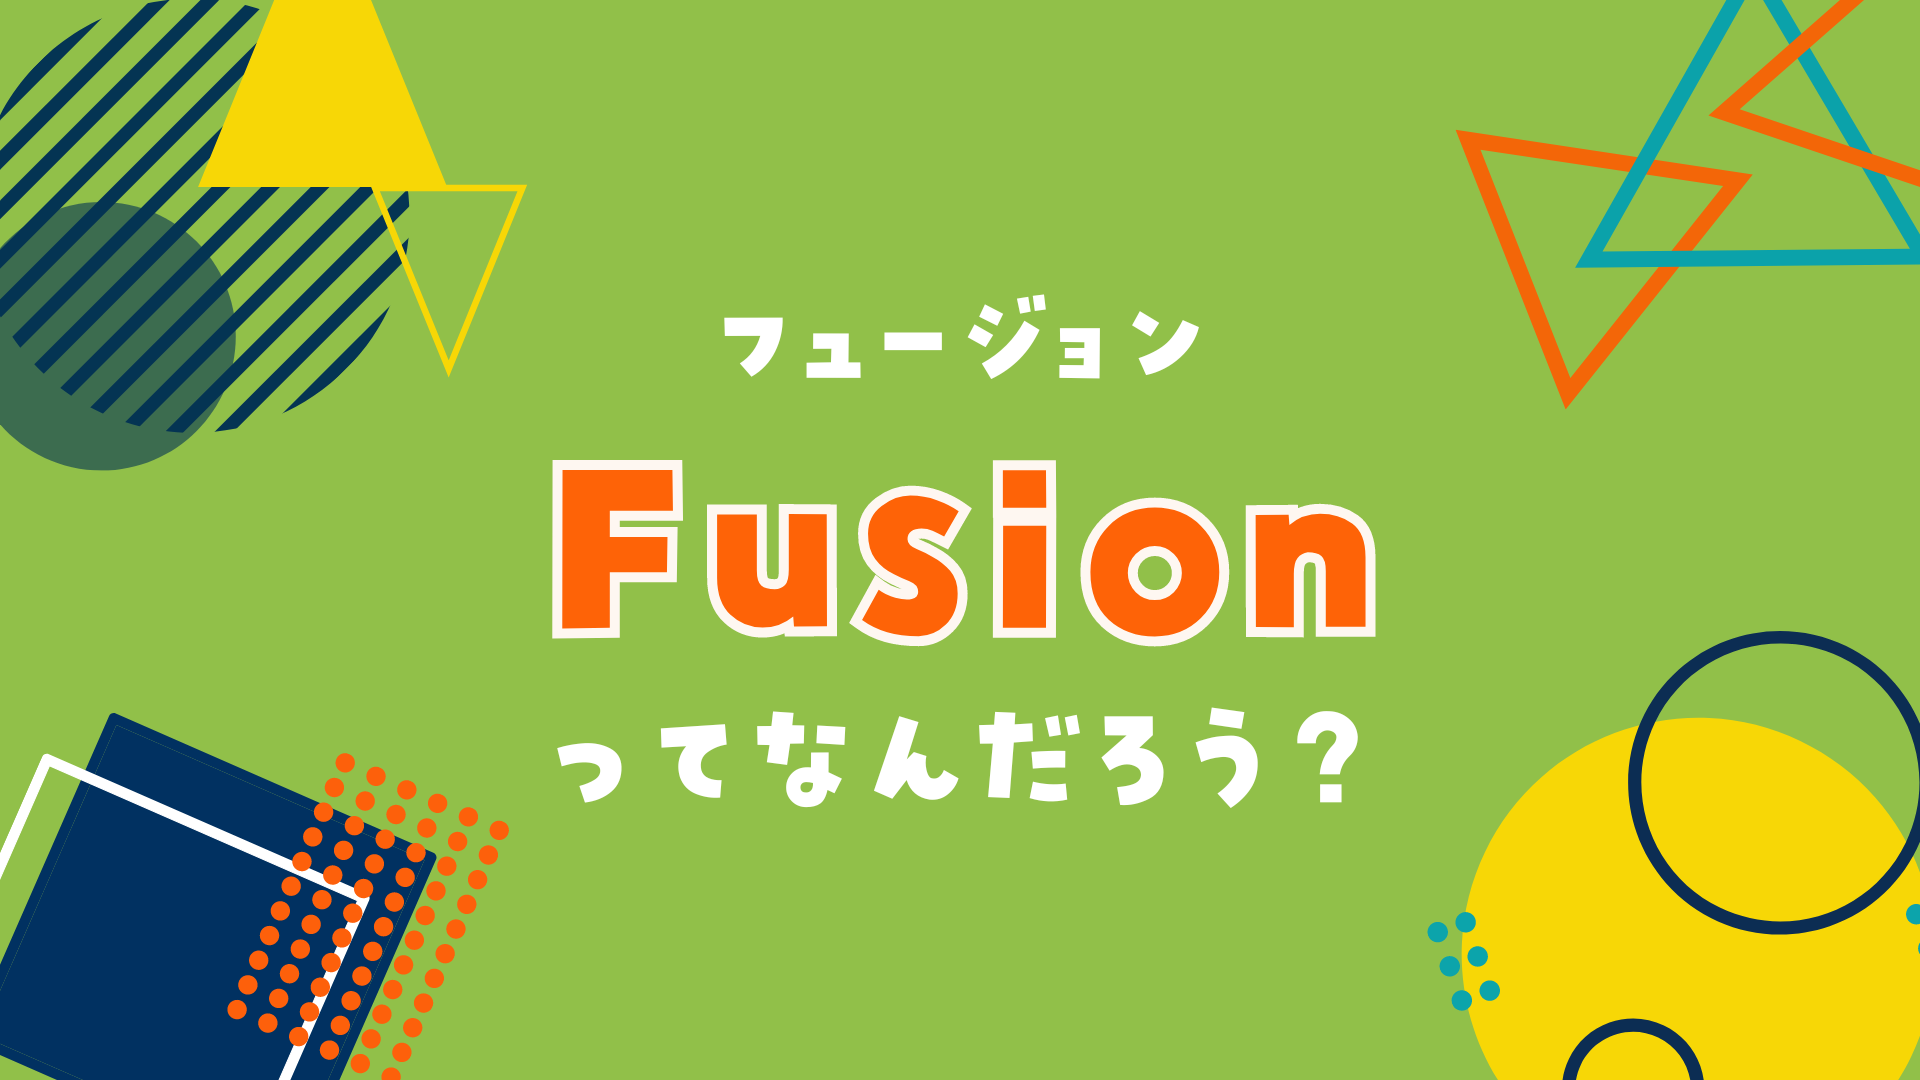 Fusion（フュージョン)ってなんだろう？